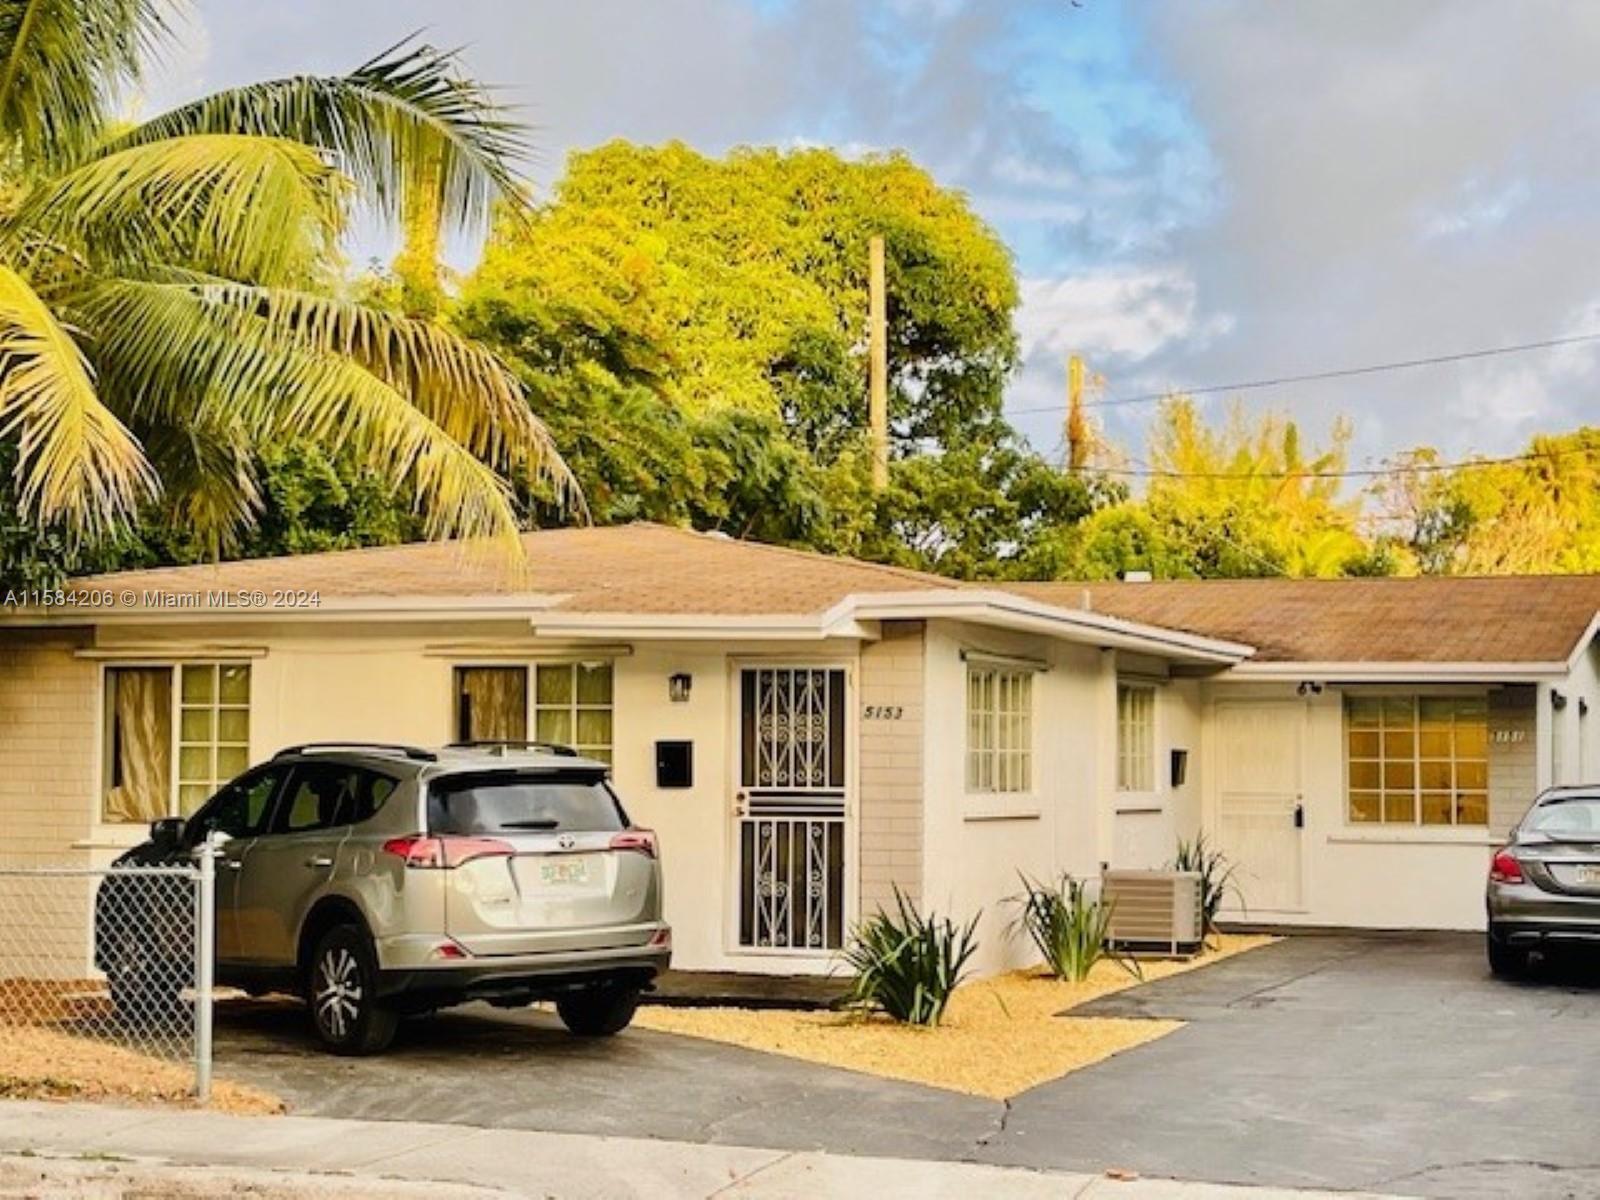 Rental Property at 5151 N Miami Ave, Miami, Broward County, Florida -  - $825,000 MO.